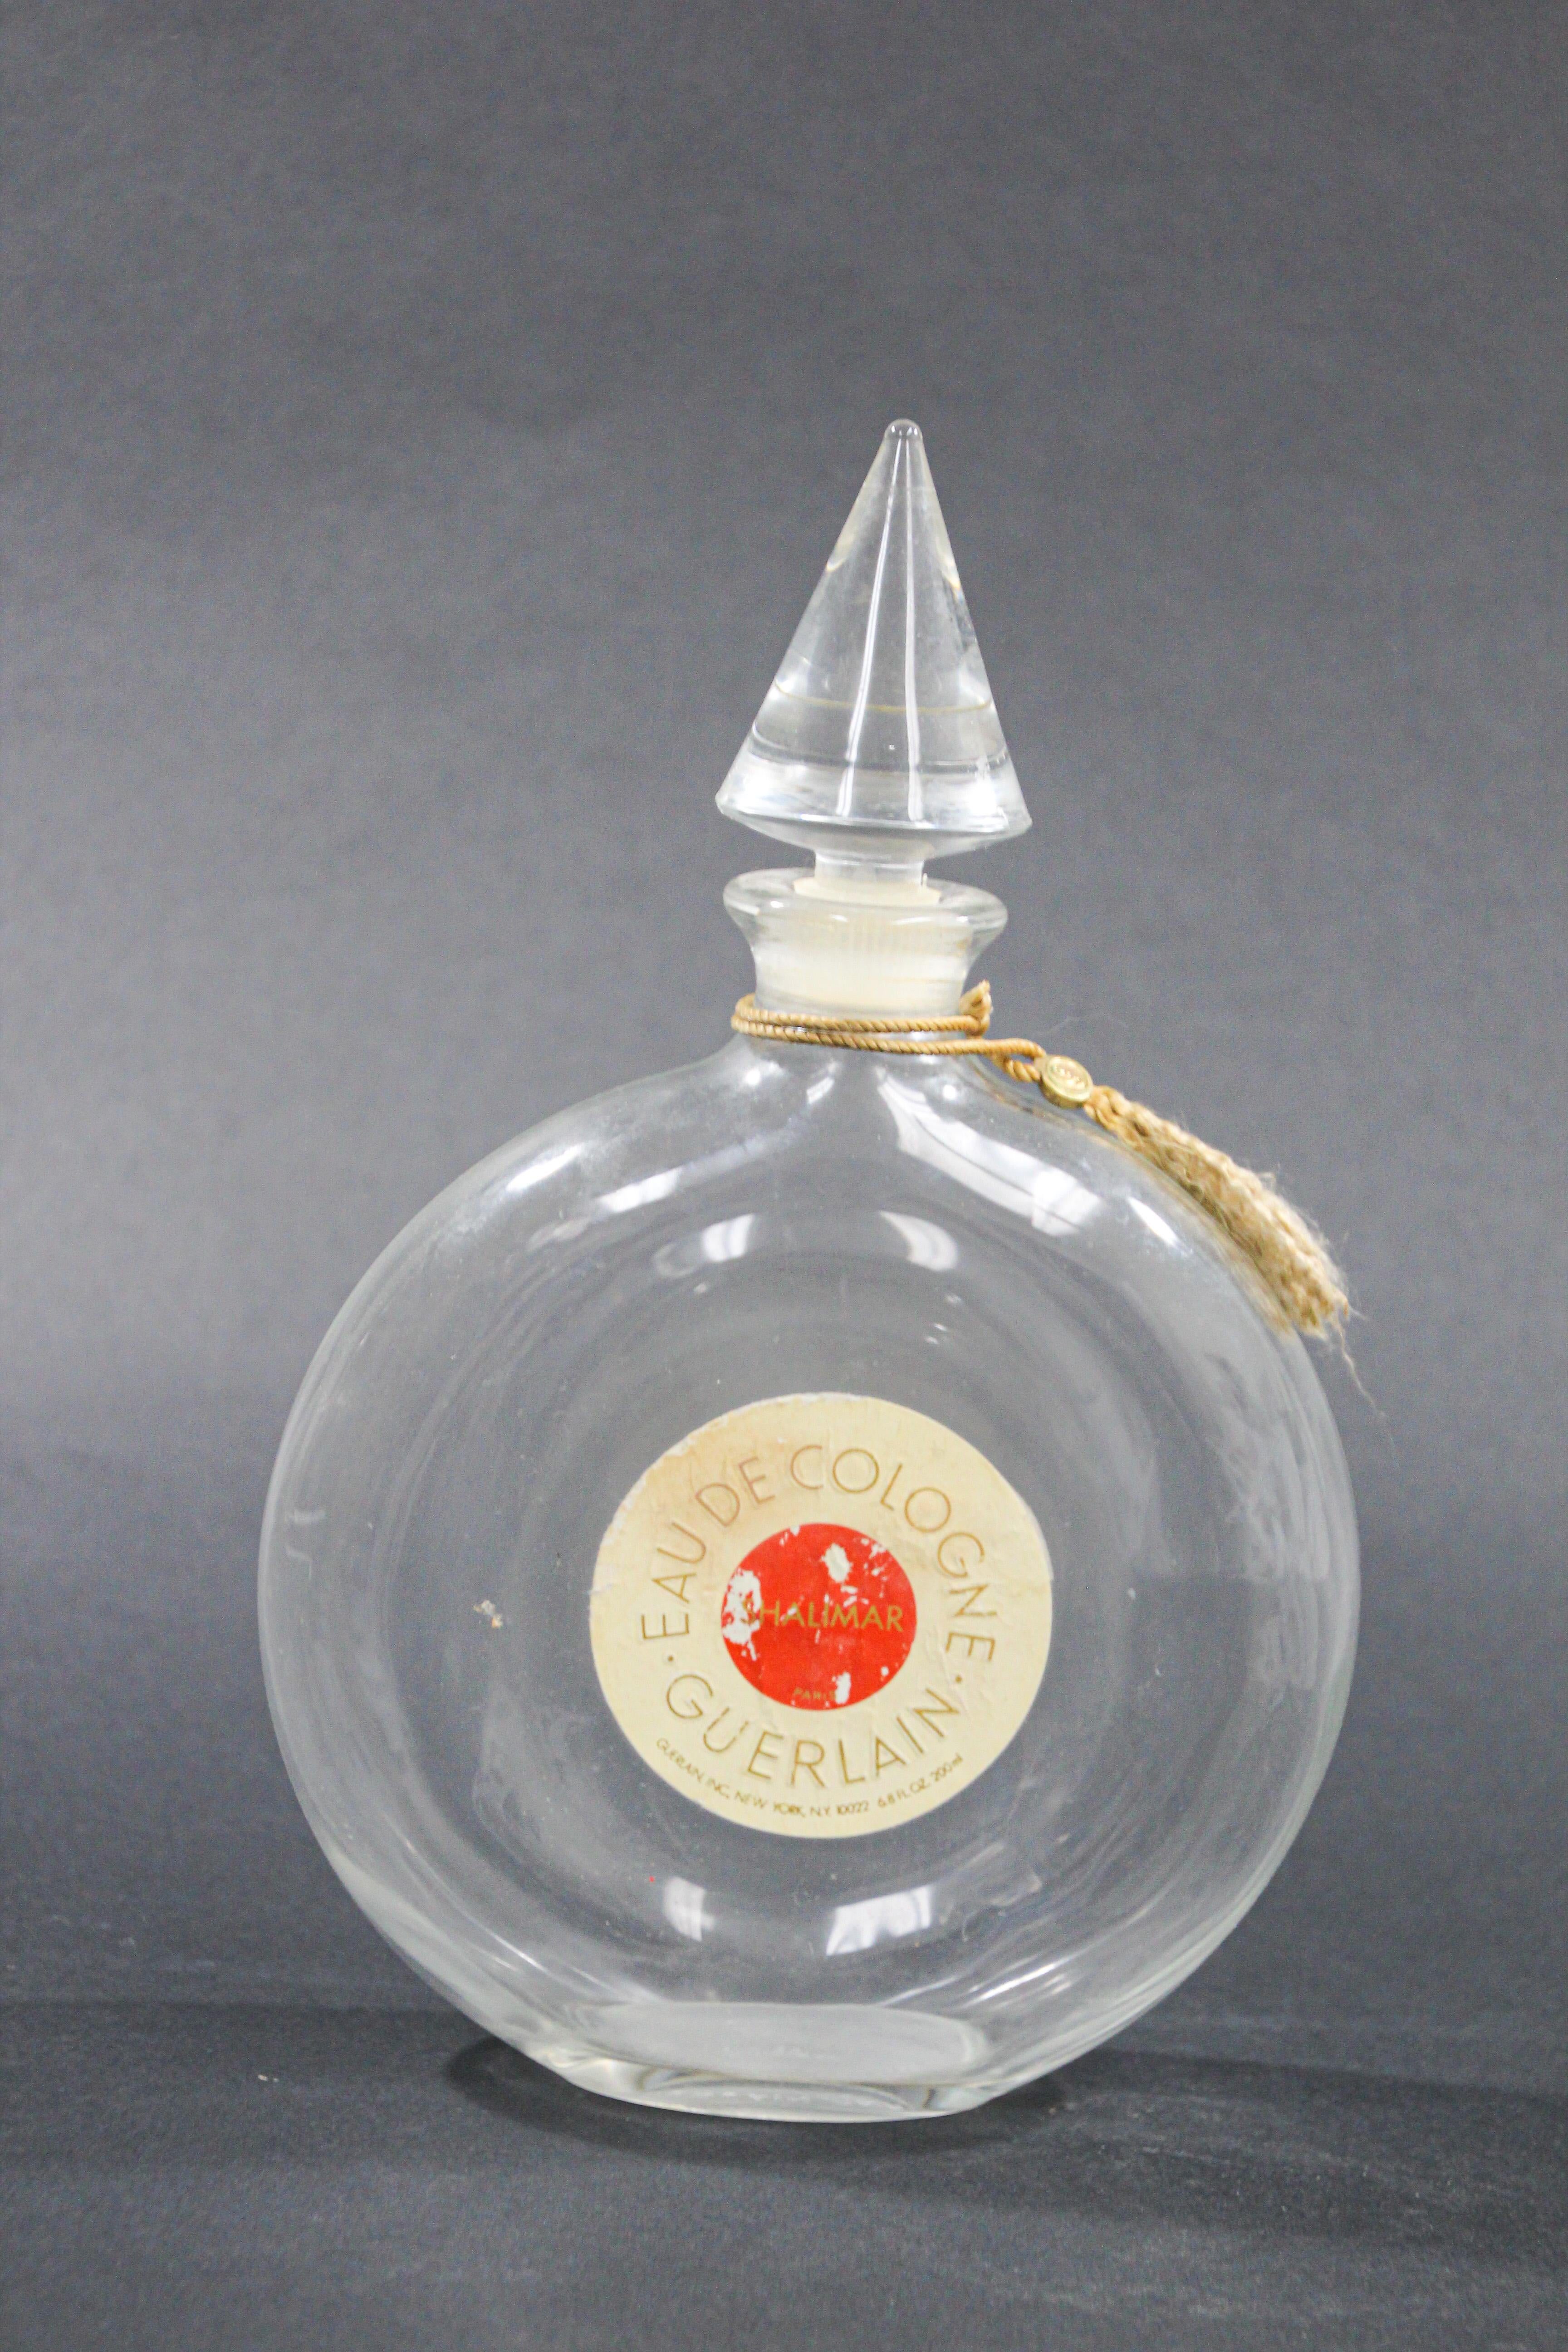 Large vintage collectible Guerlain Shalimar eau de cologne perfume bottle.
Empty collectible glass bottle of the famous Shalimar perfume.
Shalimar perfume was created in 1925 by the perfume house of Guerlain, it is is classified as a refined